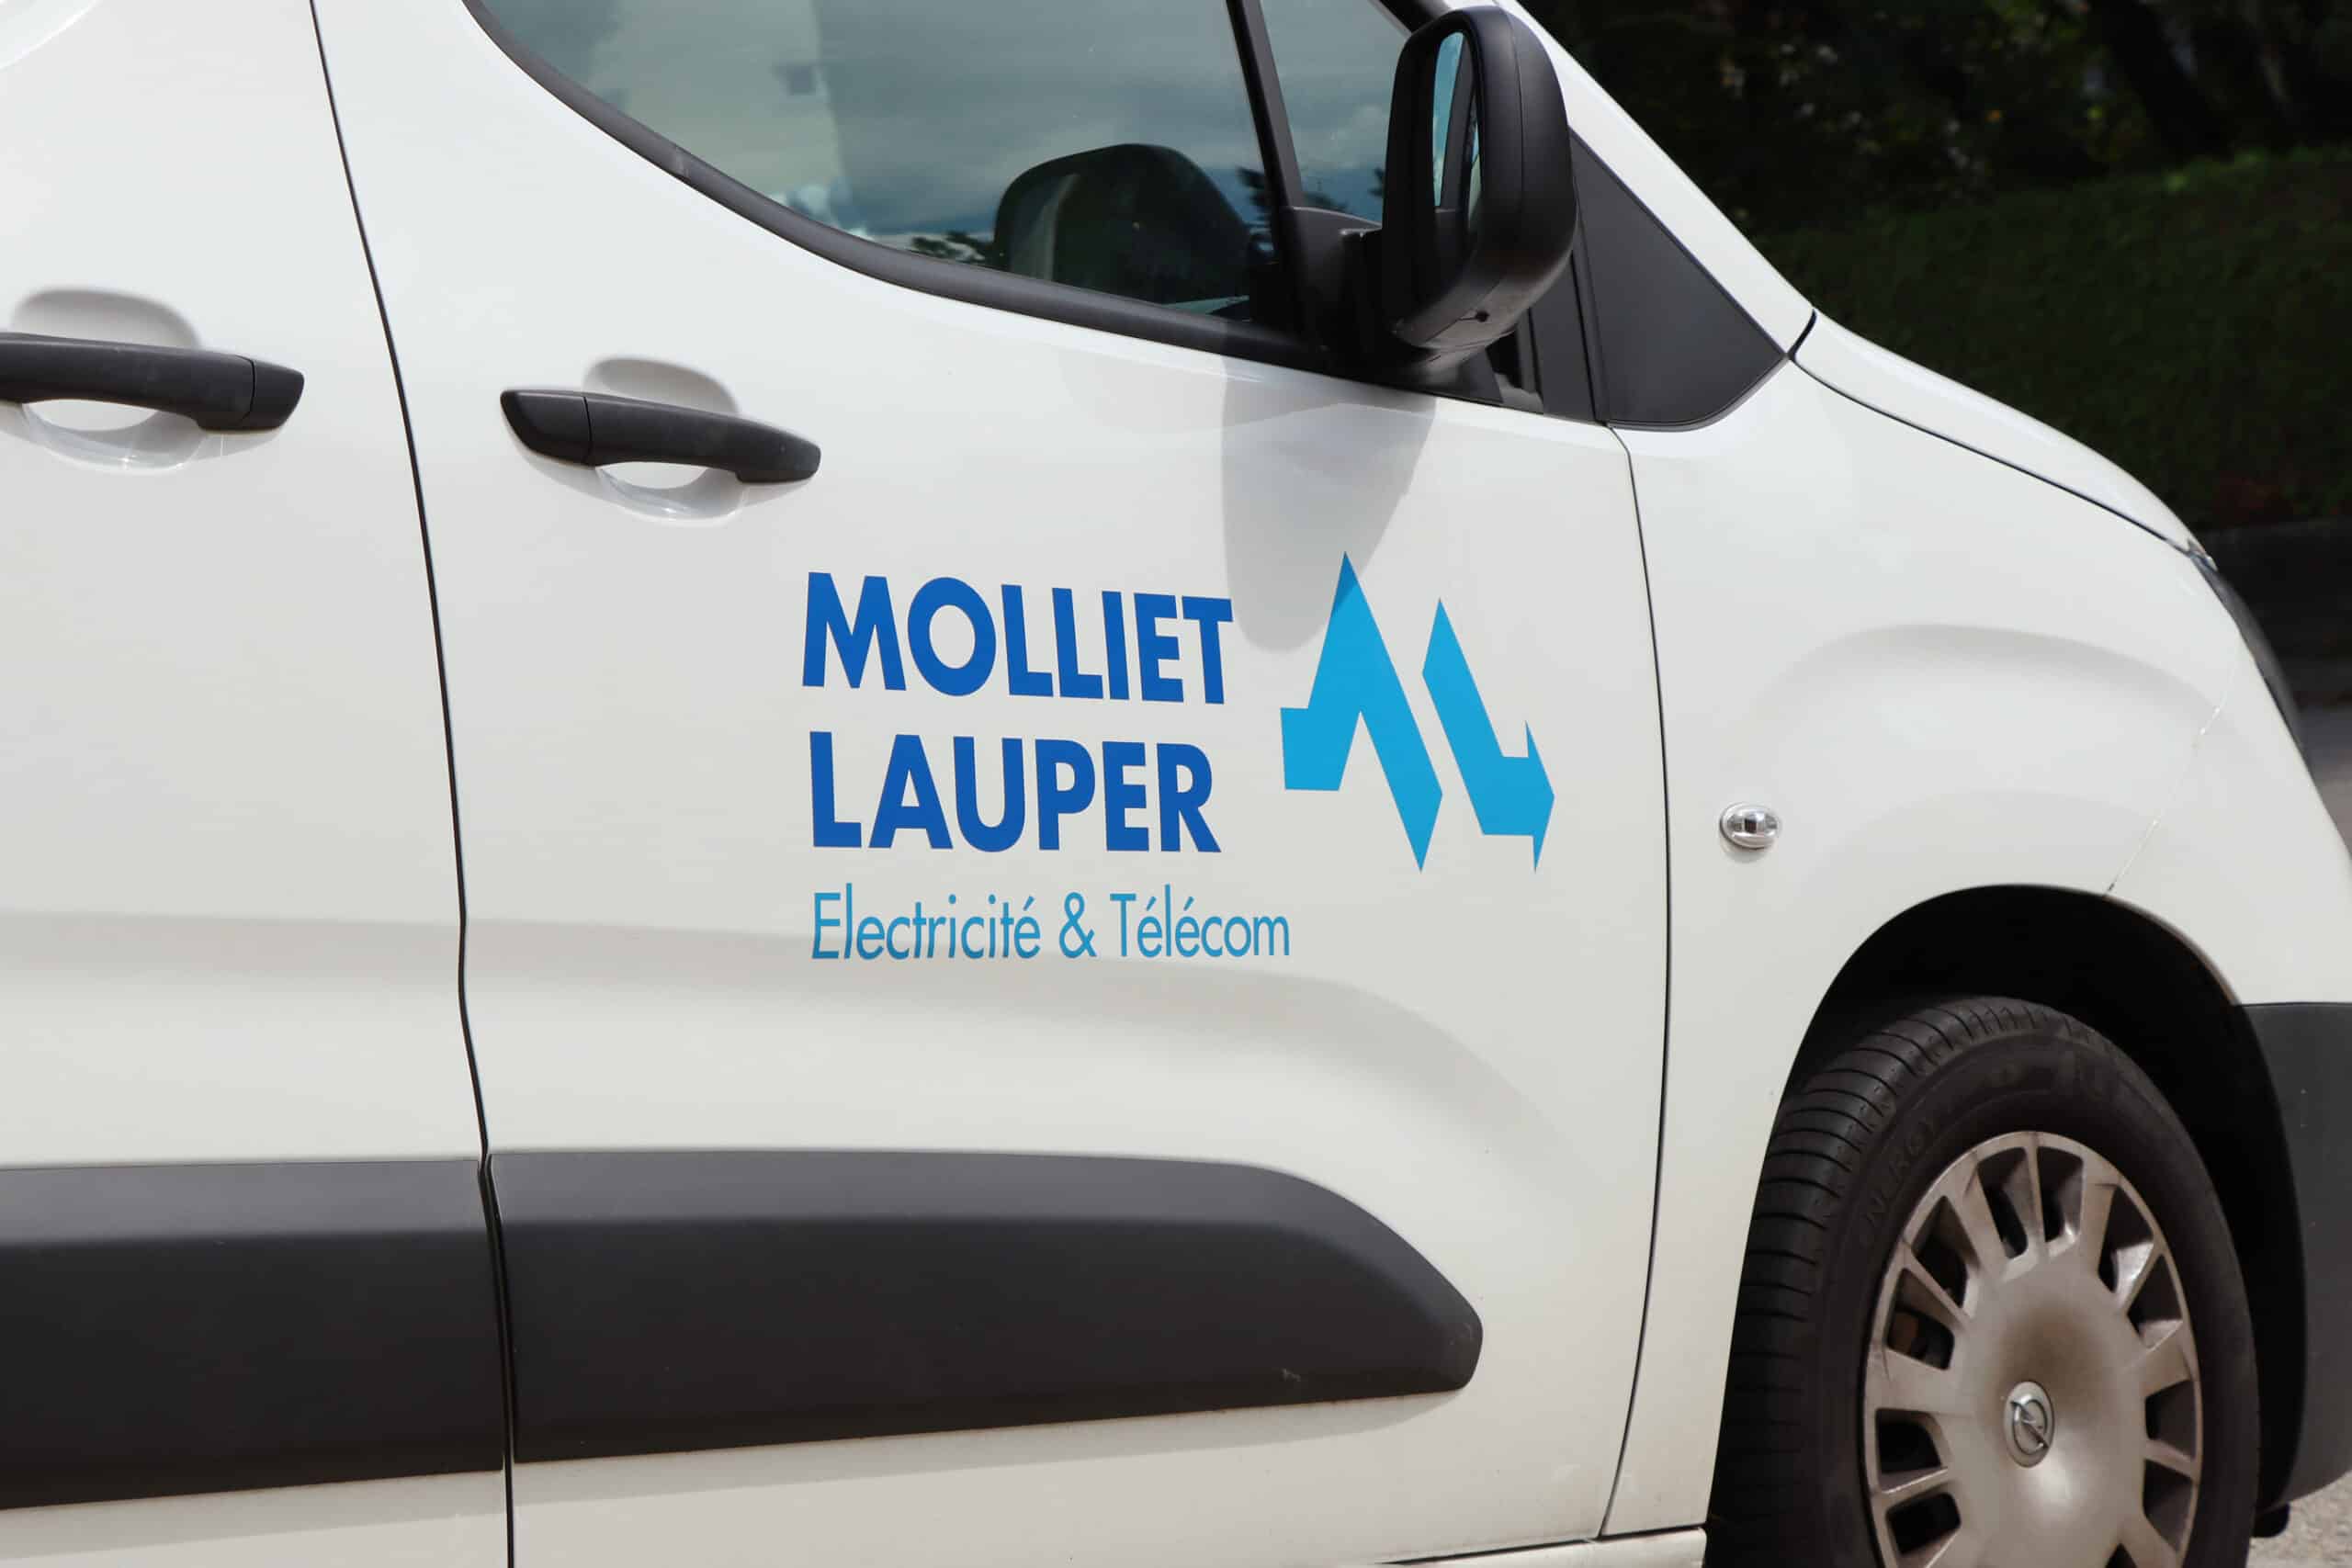 Logo Molliet Lauper sur la portiere d'un fourgon.